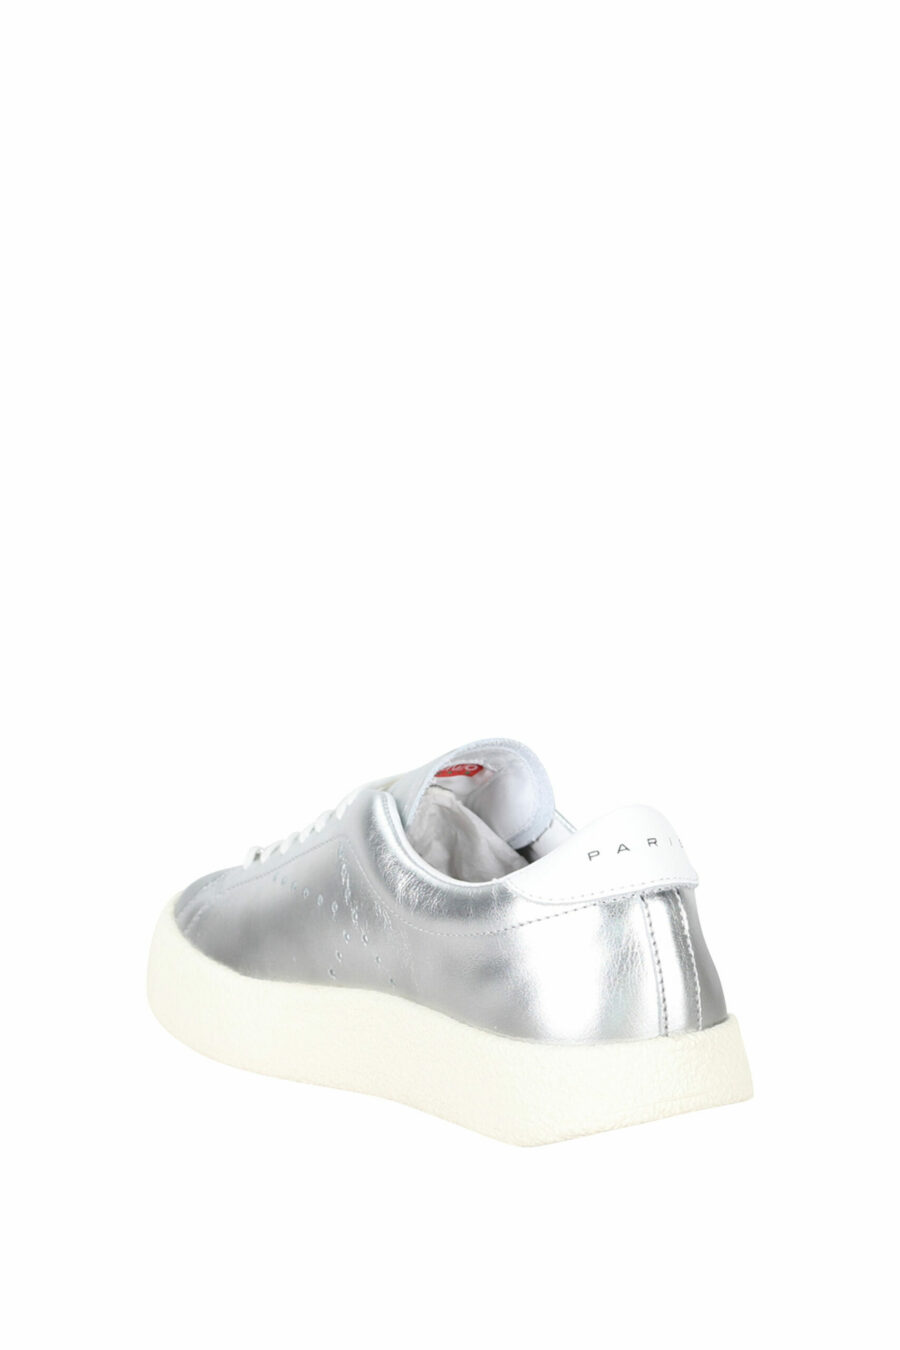 Silberne Schuhe mit schwarzem Mini-Logo - 3612230556461 3 skaliert